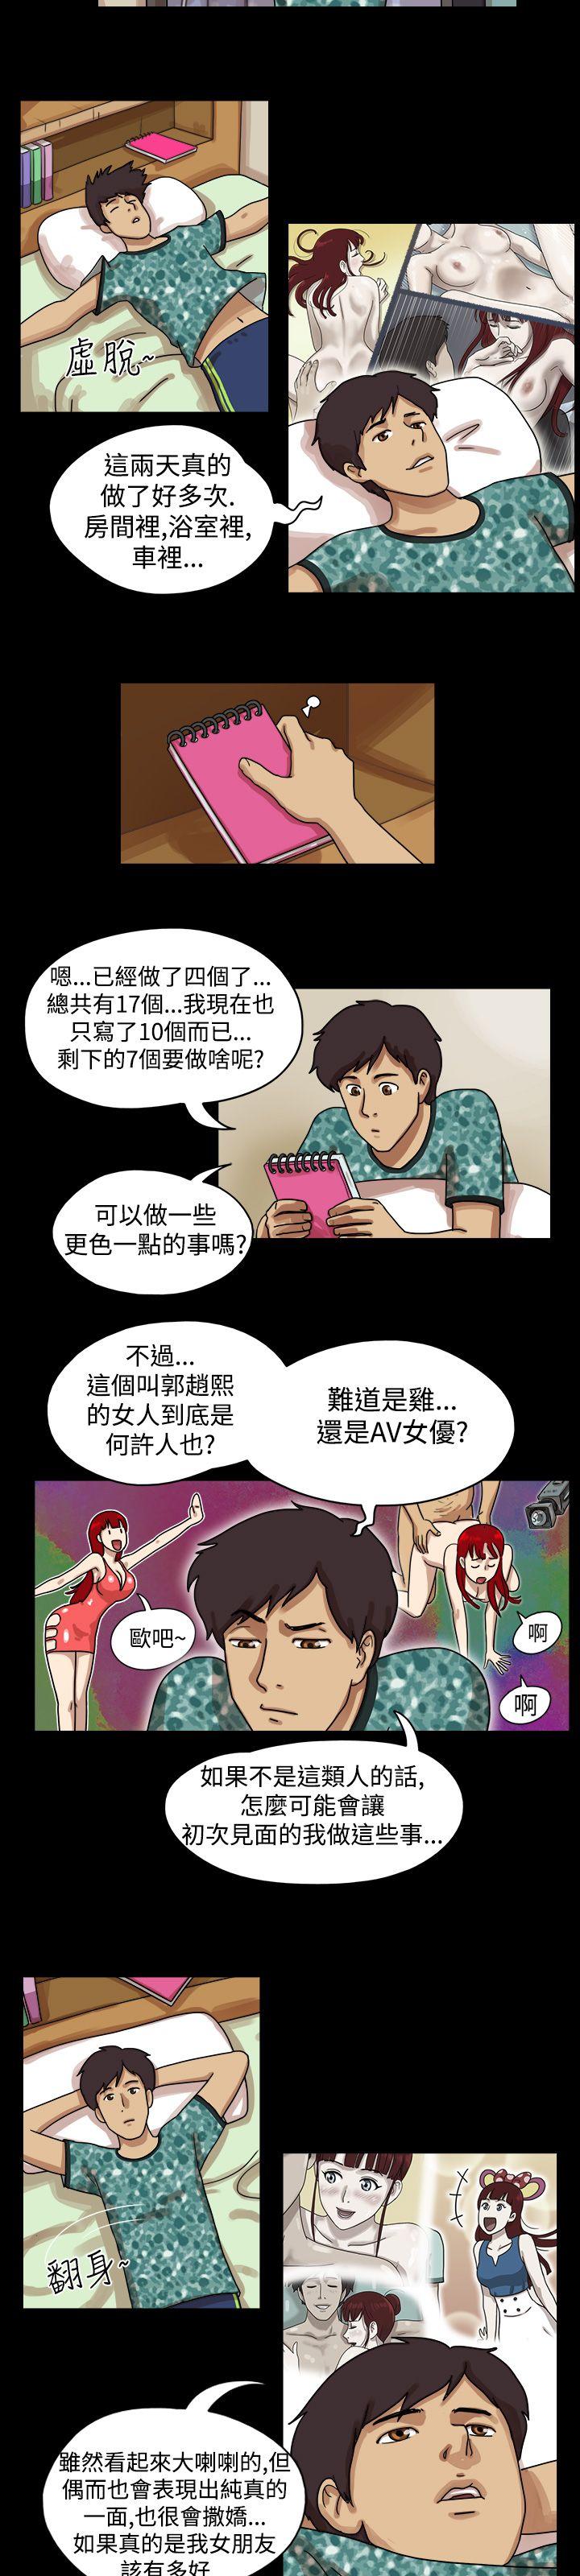 韩国污漫画 17種性幻想第一季 第11话 2